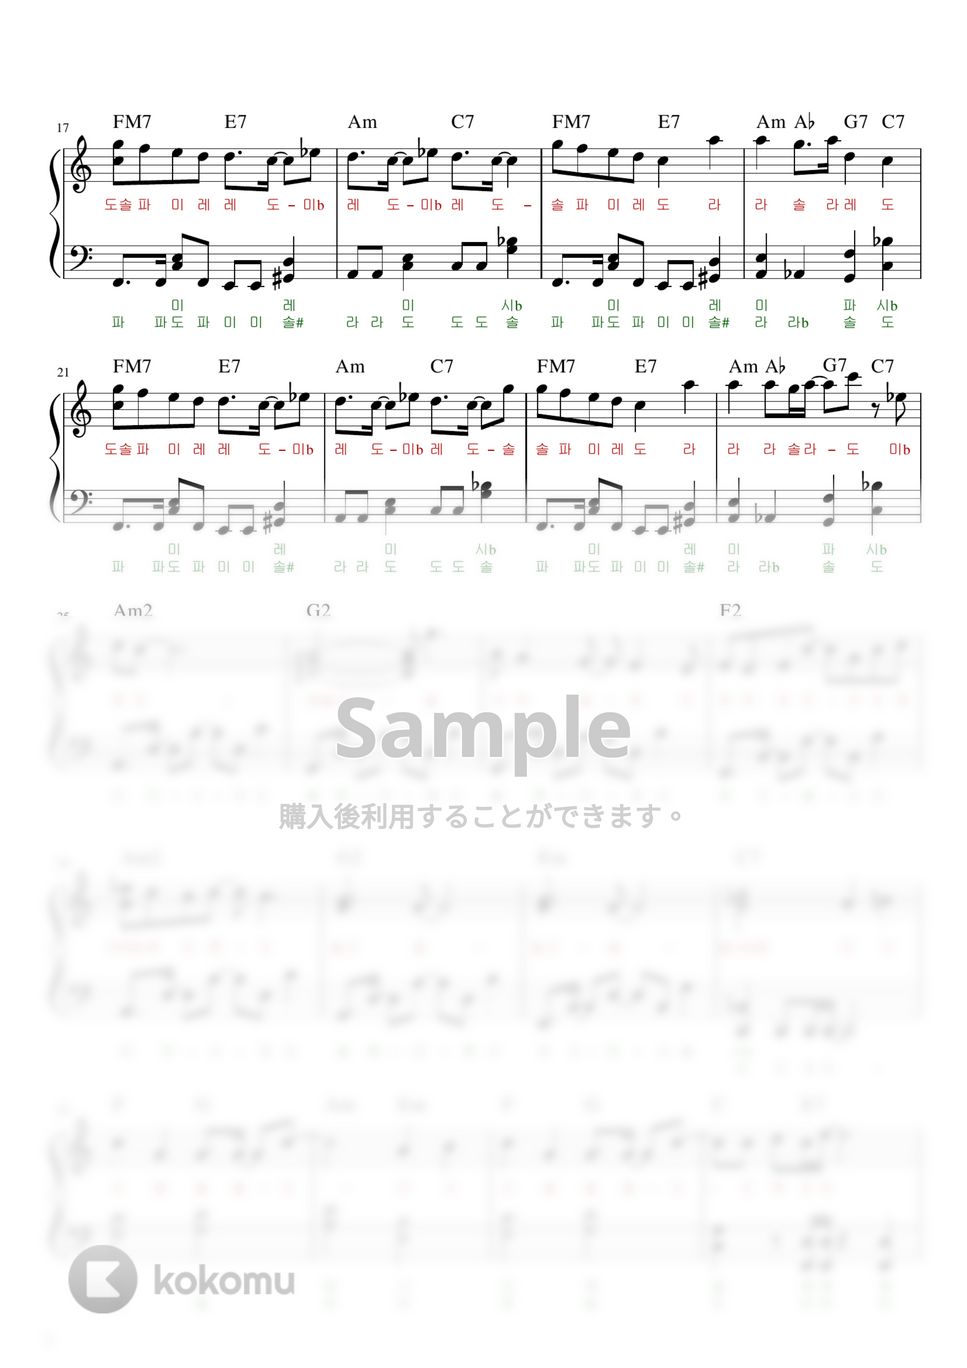 椎名林檎 - 丸の内サディスティッ( (Marunouchi Sadistic) (Easy ver.) by PichiAhr